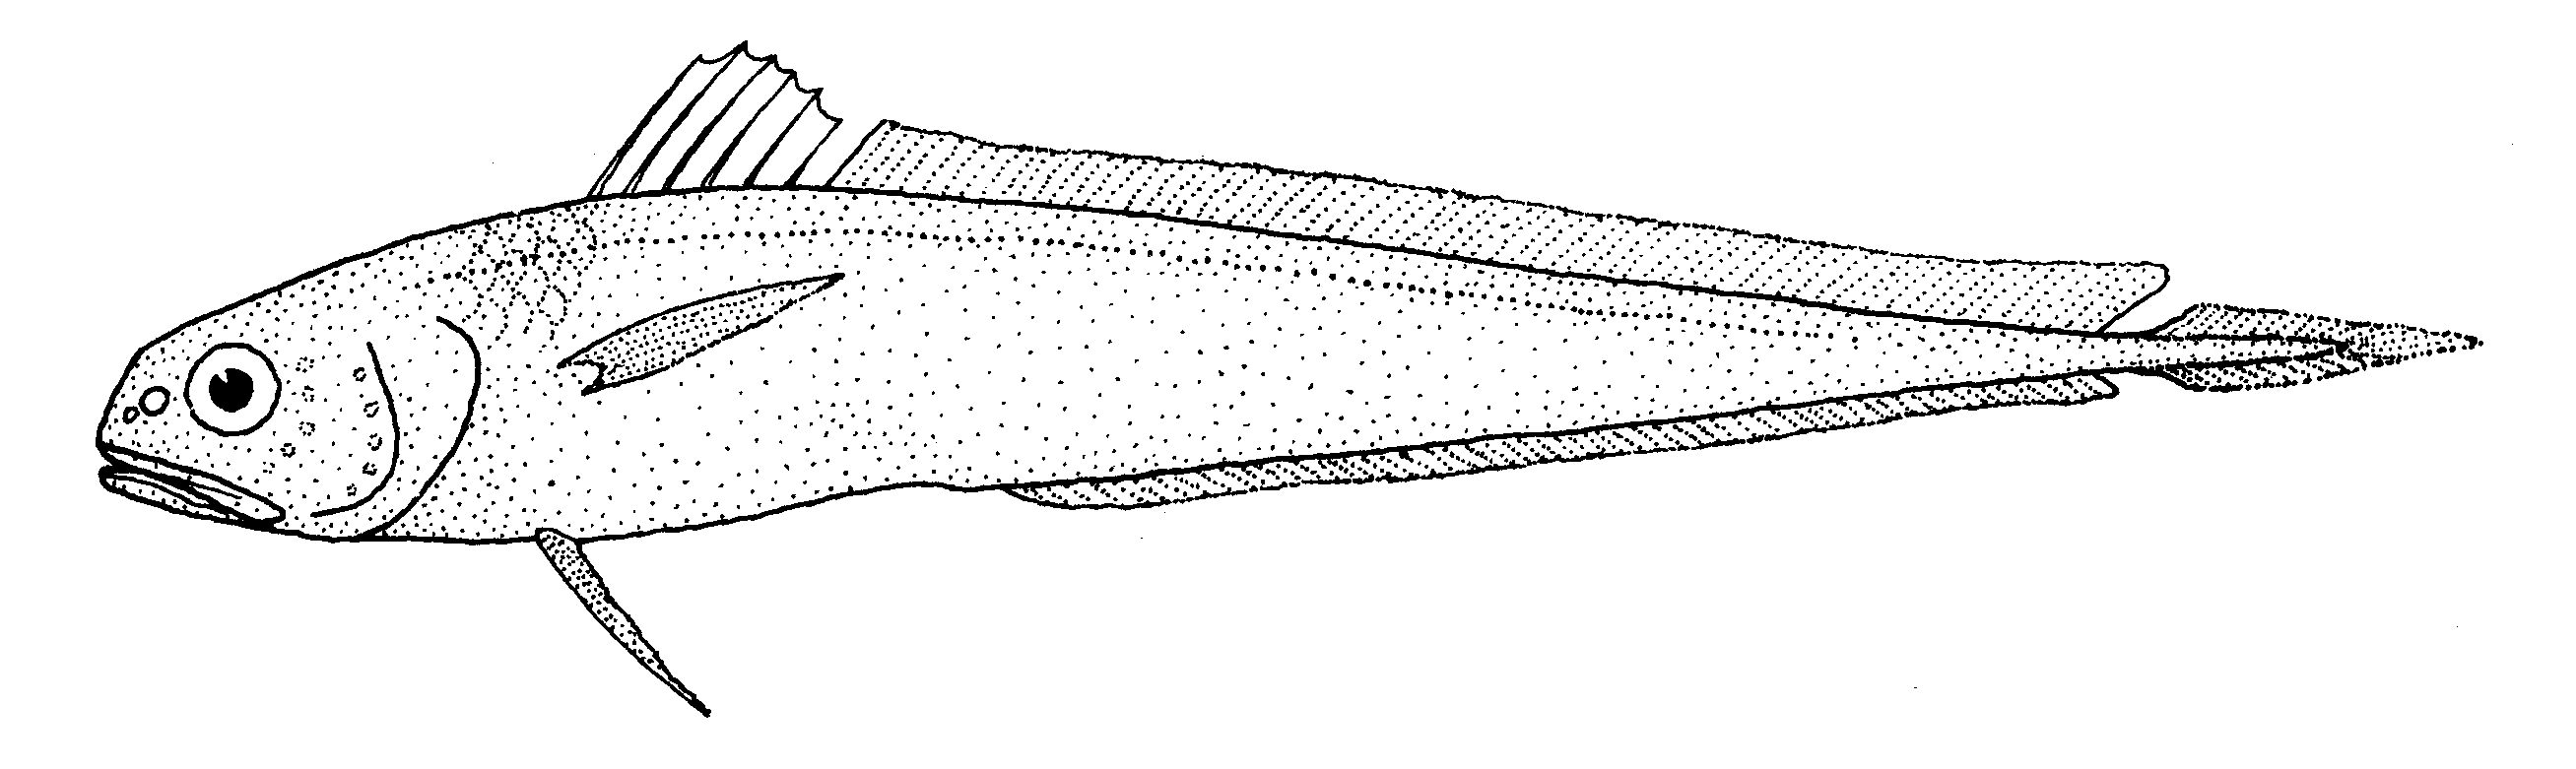 Пелагическая рыба фото